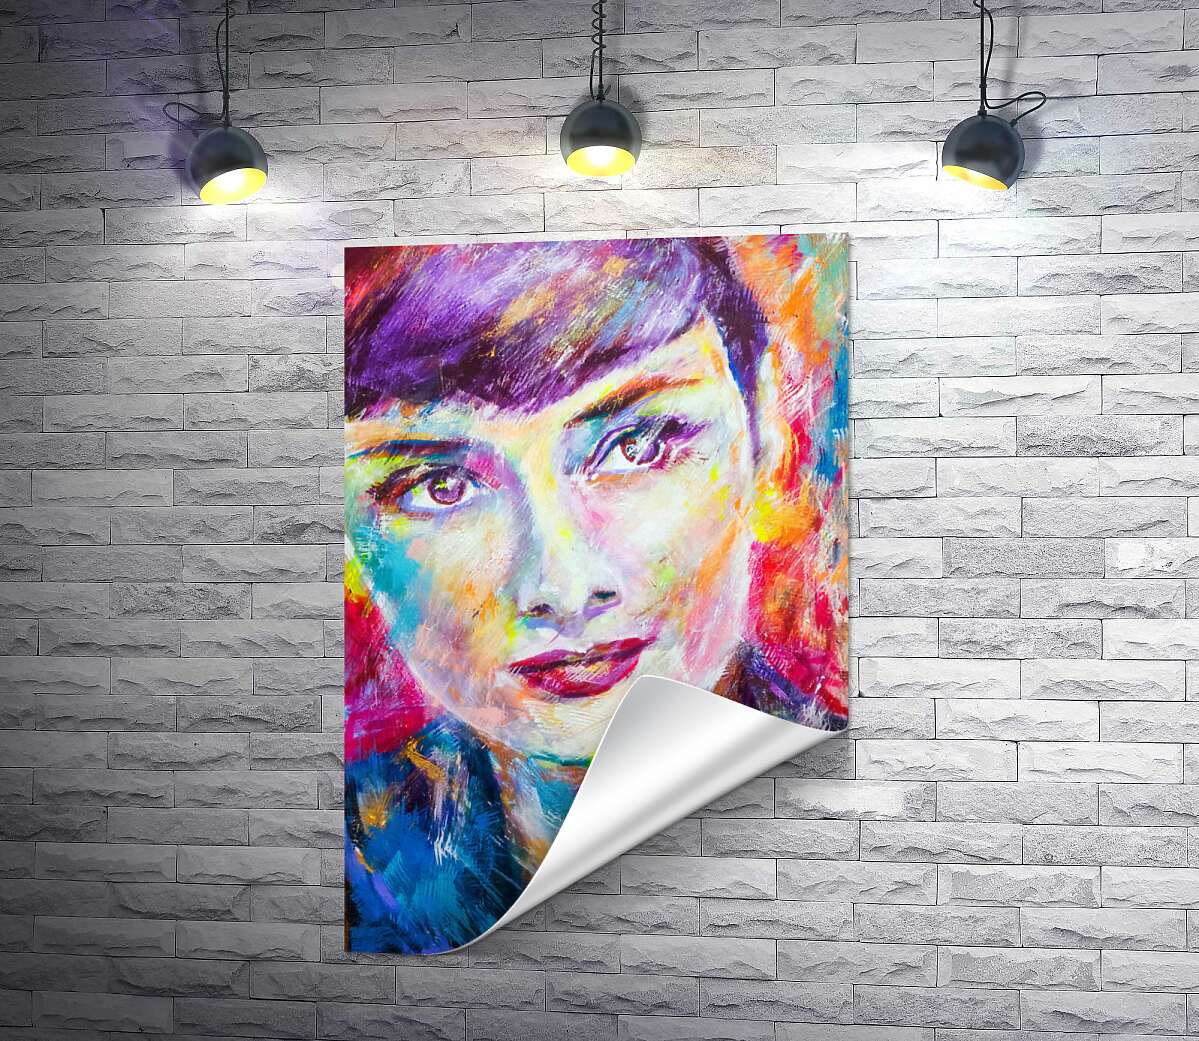 друк Поєднання барв на портреті Одрі Гепберн (Audrey Hepburn)